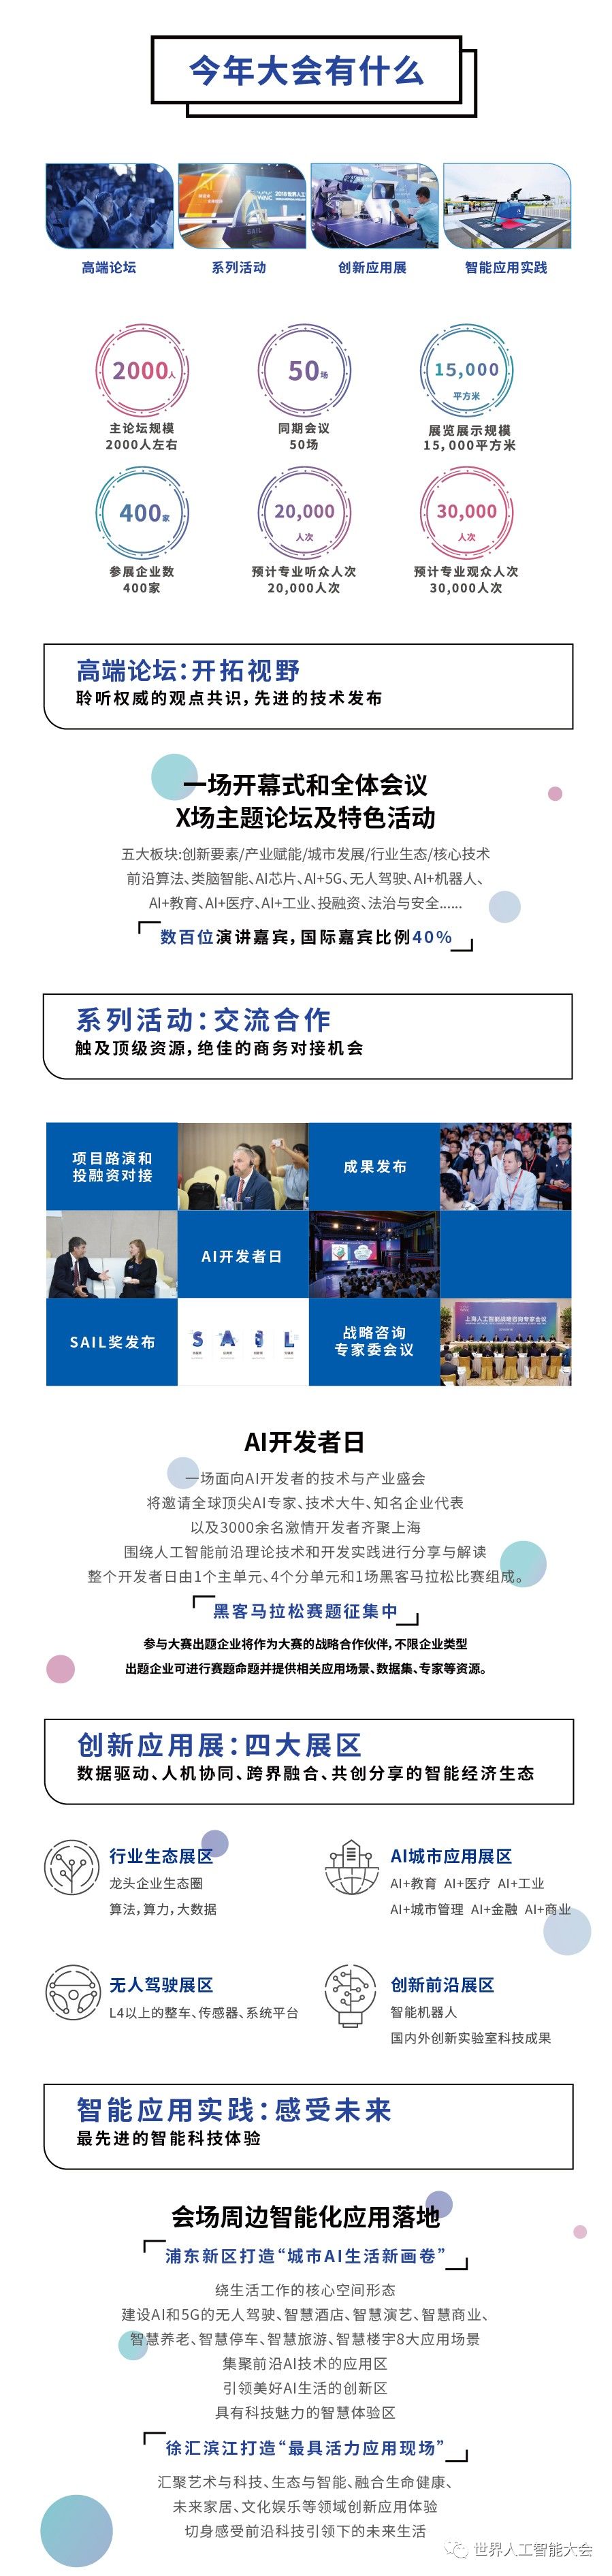 上海市政府新闻发布会今日召开，2019世界人工智能大会筹备细节曝光